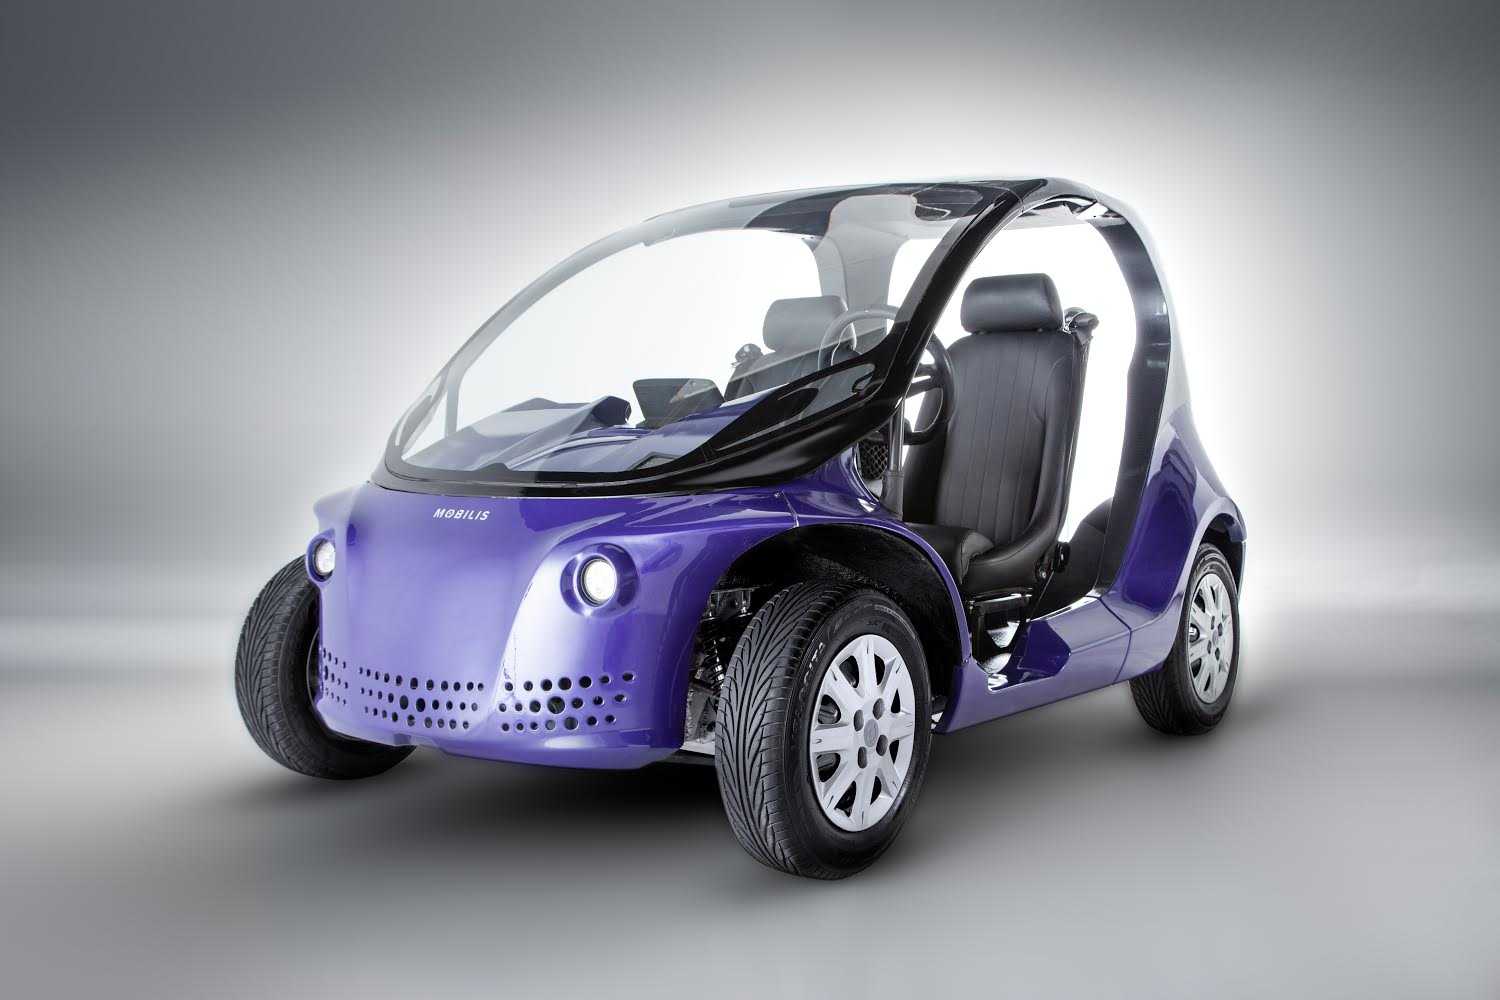  O Li, primeiro lançamento da marca, participará da exposição de carros elétricos e híbridos nacionais e importados | Foto Divulgação